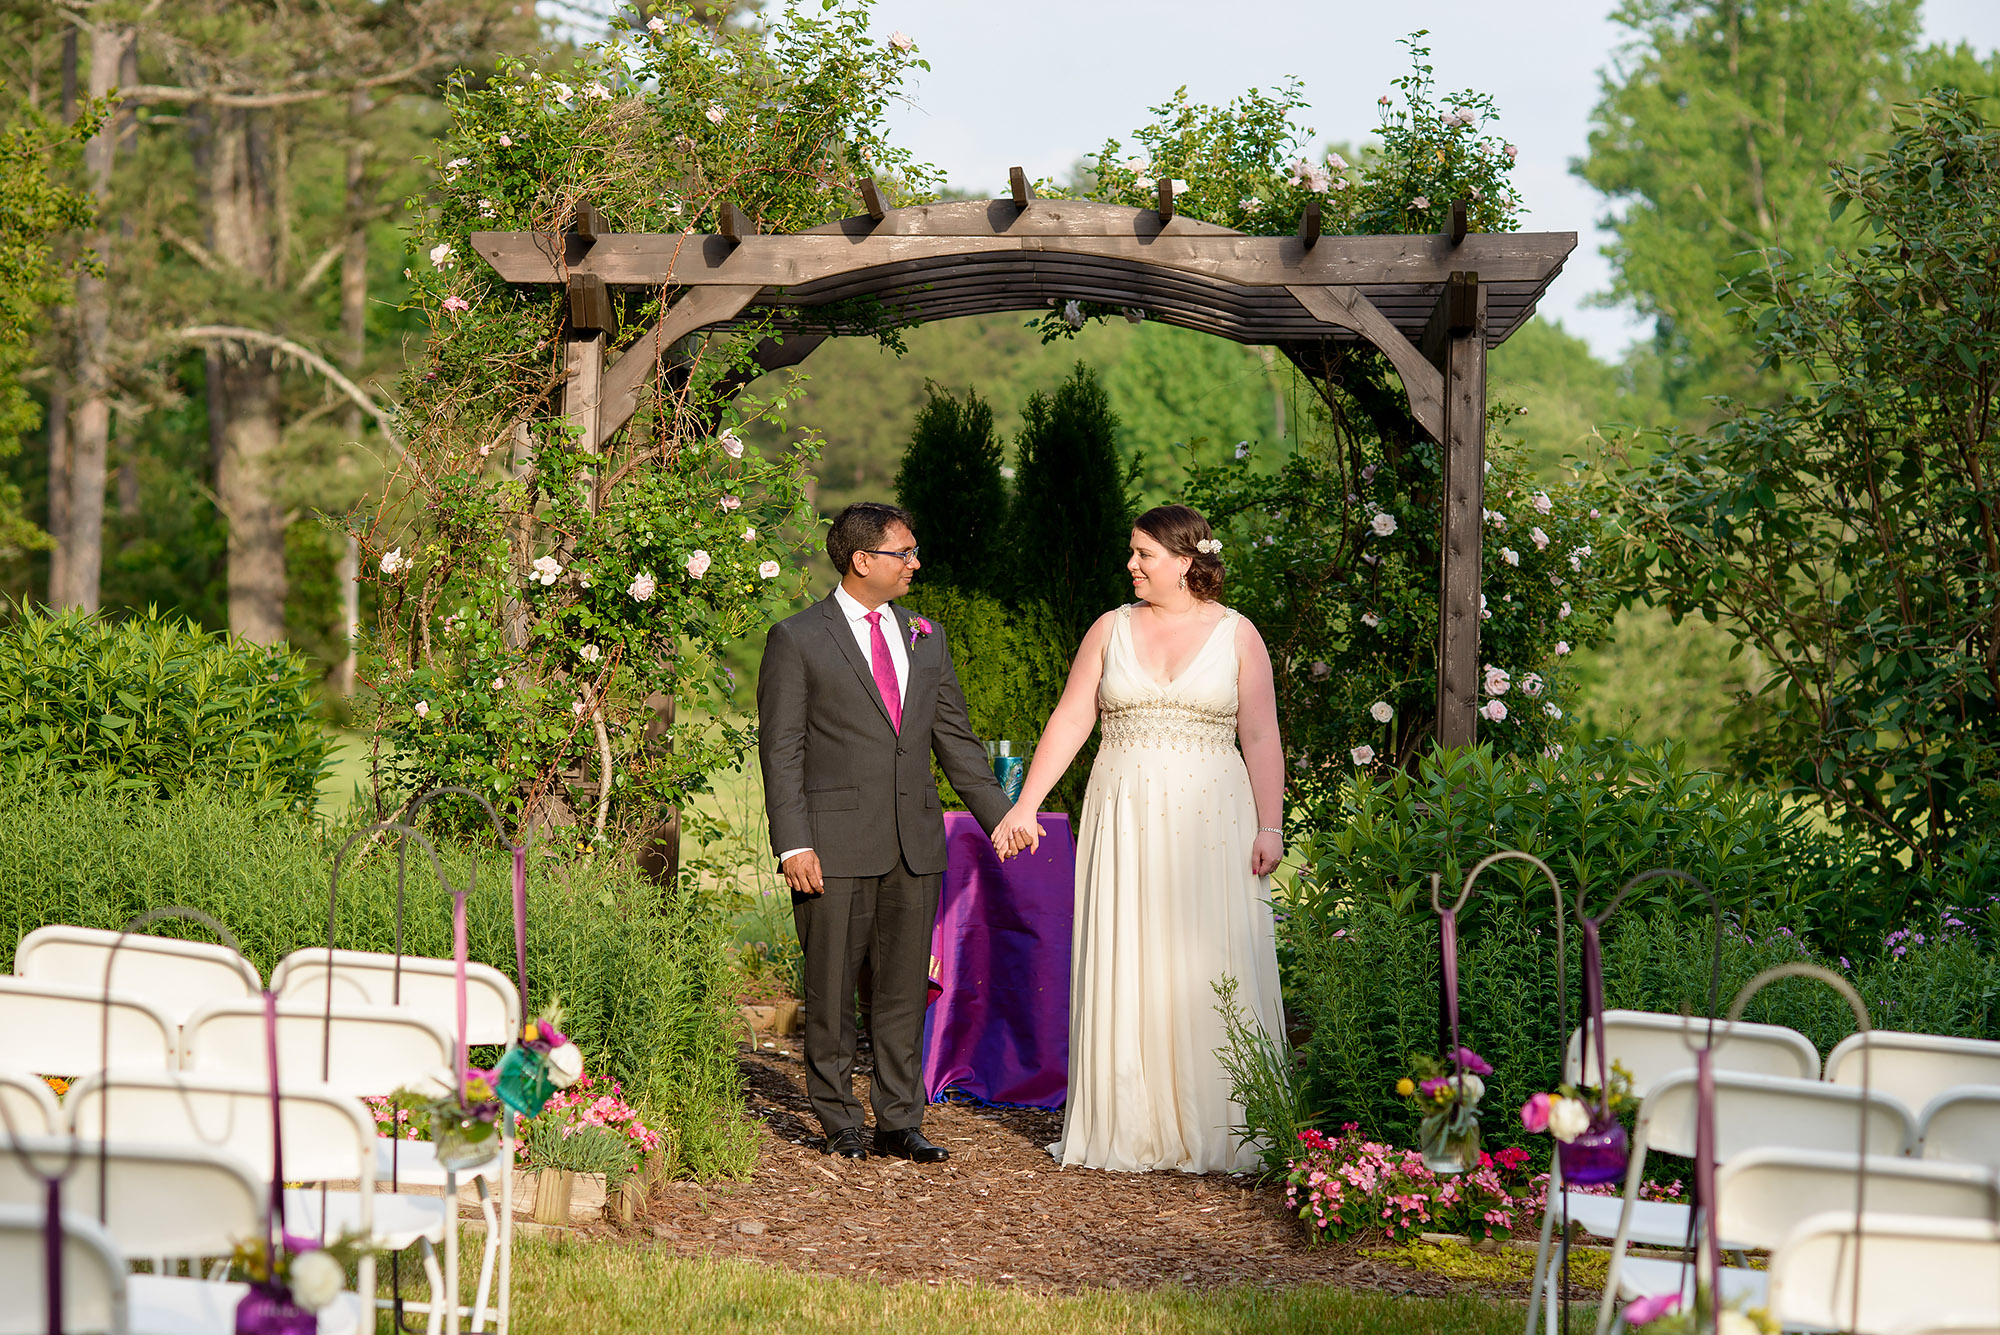 Vibhanshu and Brooke | Wedding at Glen-Ella Springs